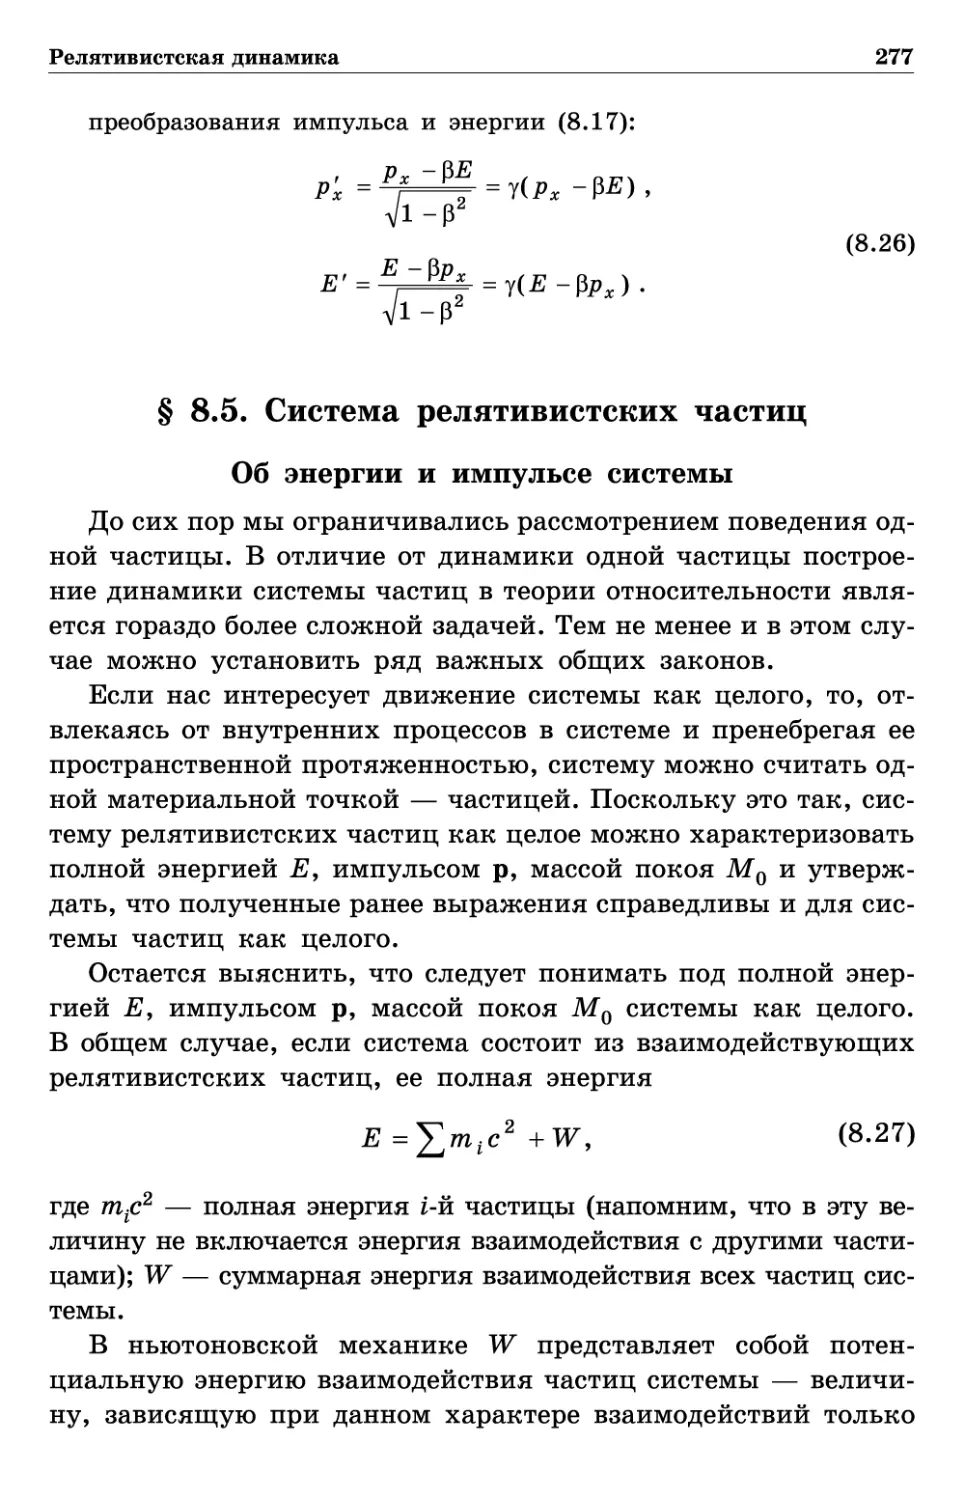 § 8.5. Система релятивистских частиц